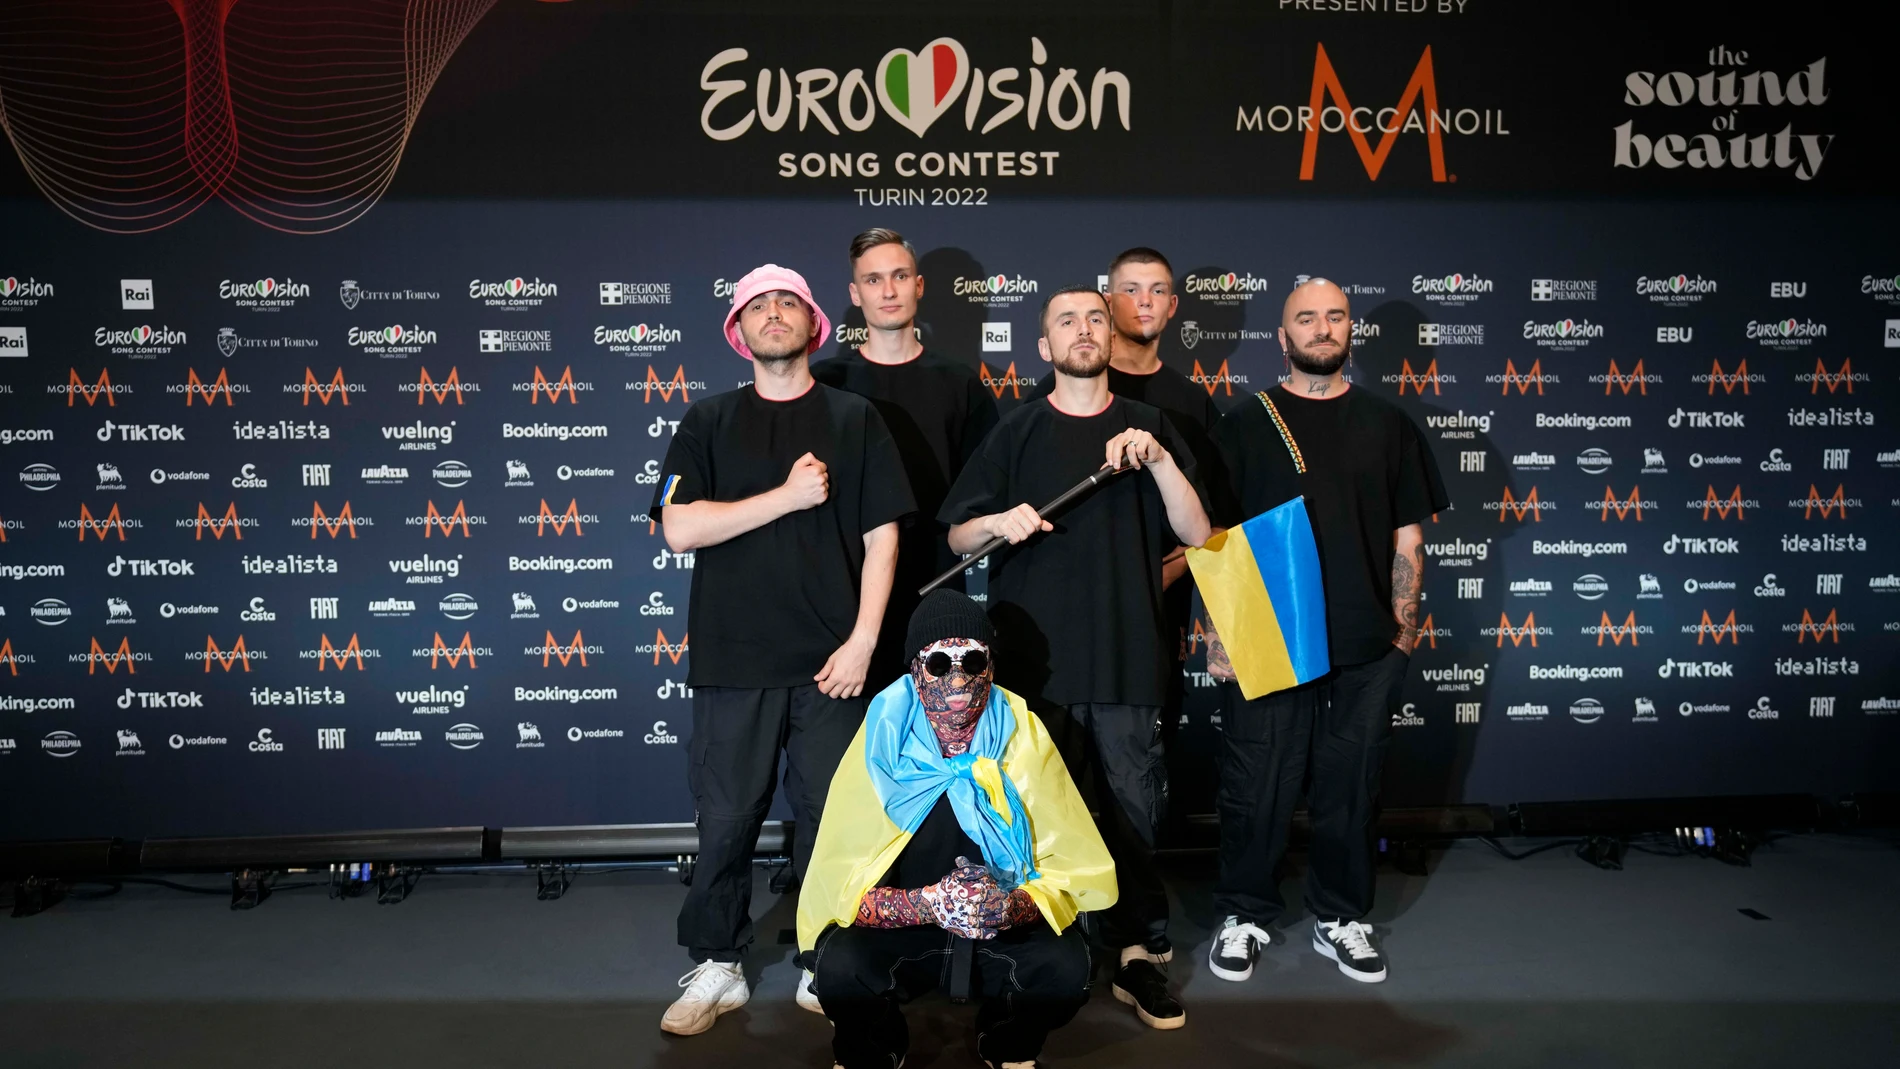 La UER anuncia el lanzamiento de Festival de Eurovisión en América Latina 